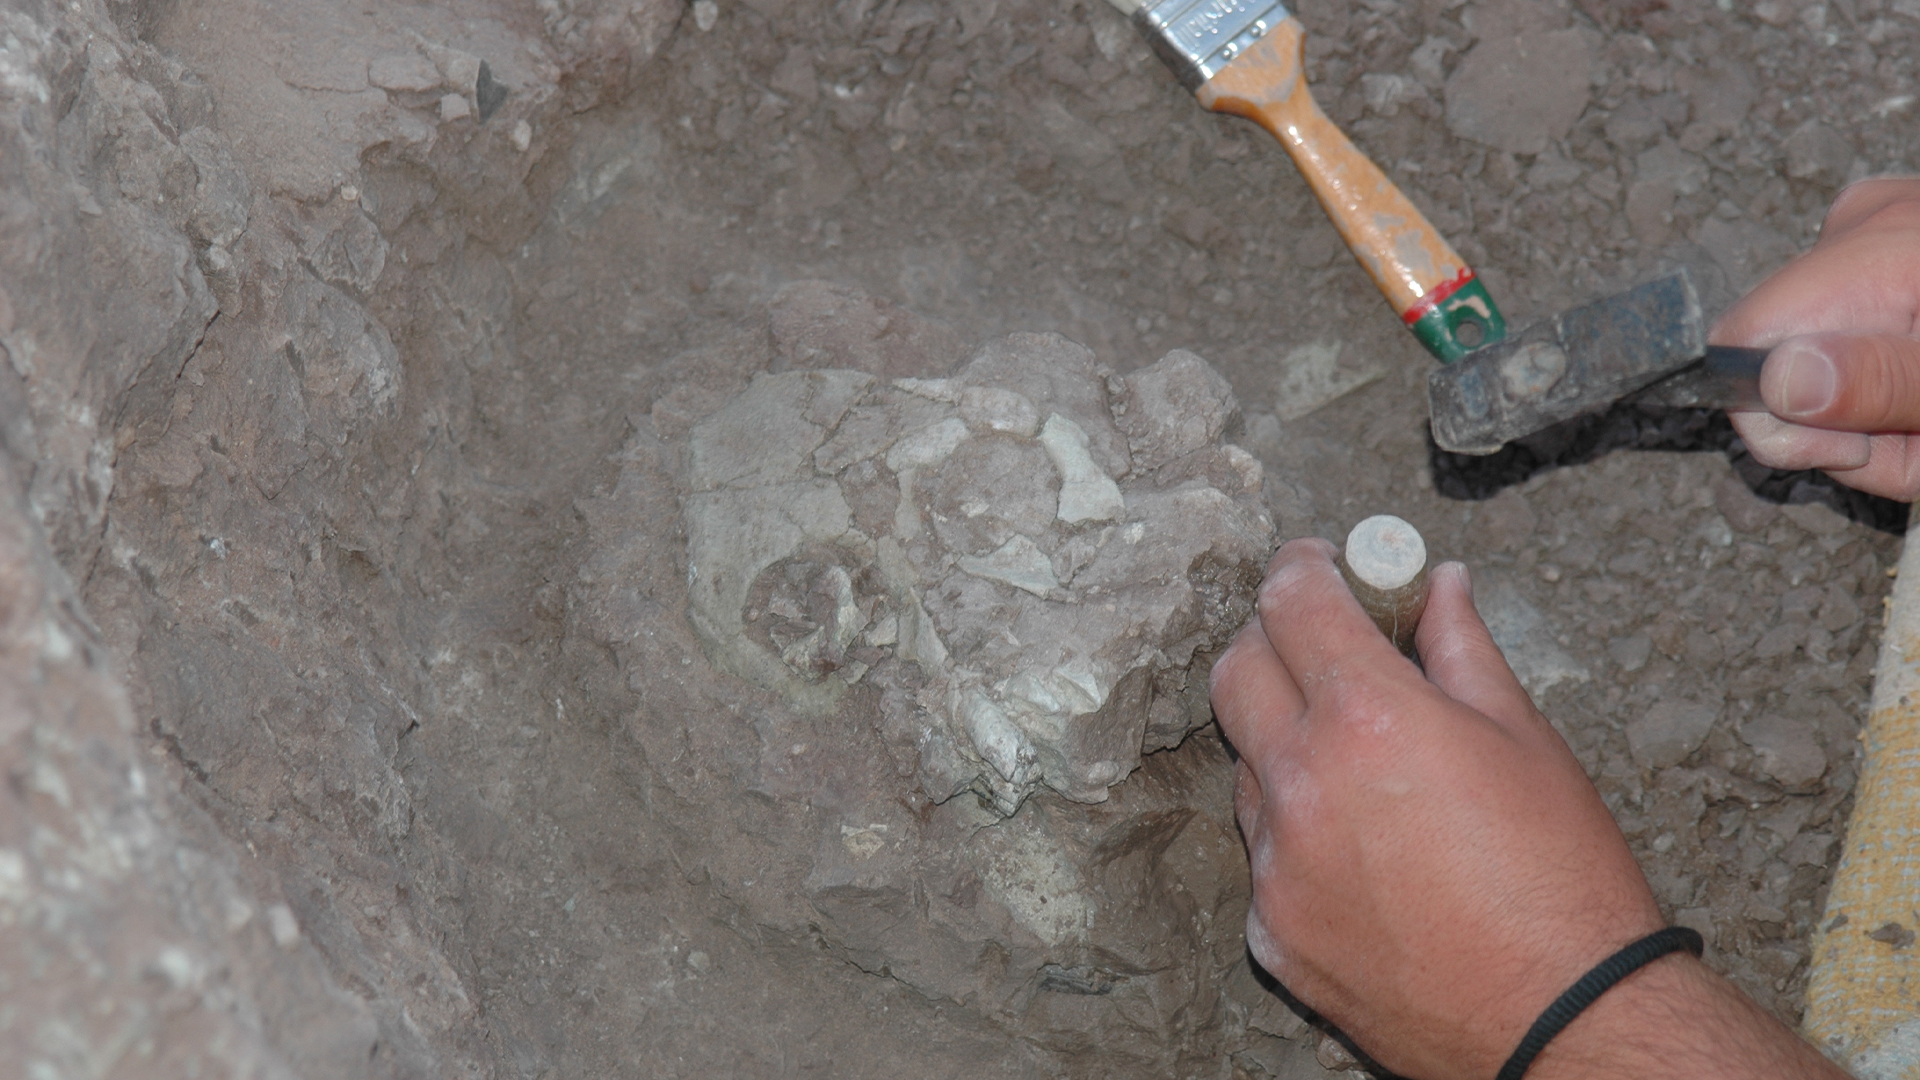 Kita melihat tangan seseorang memegang pahat untuk menggali fosil tengkorak di dalam tanah.